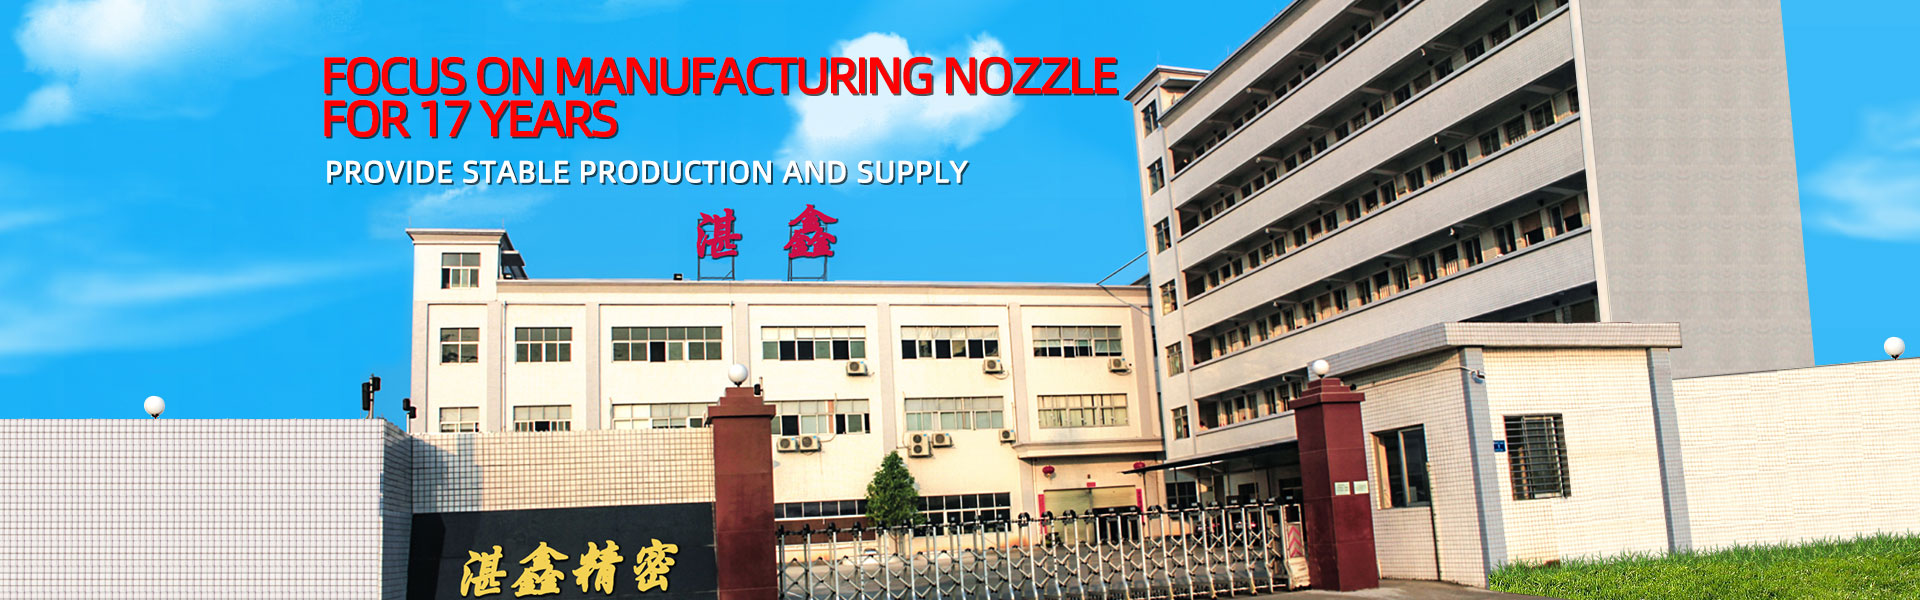 การประมวลผลโลหะ, หัวฉีดอุตสาหกรรม, เครื่องจักรกล,Dongguan Zhanxin Precision Technology Co., Ltd.